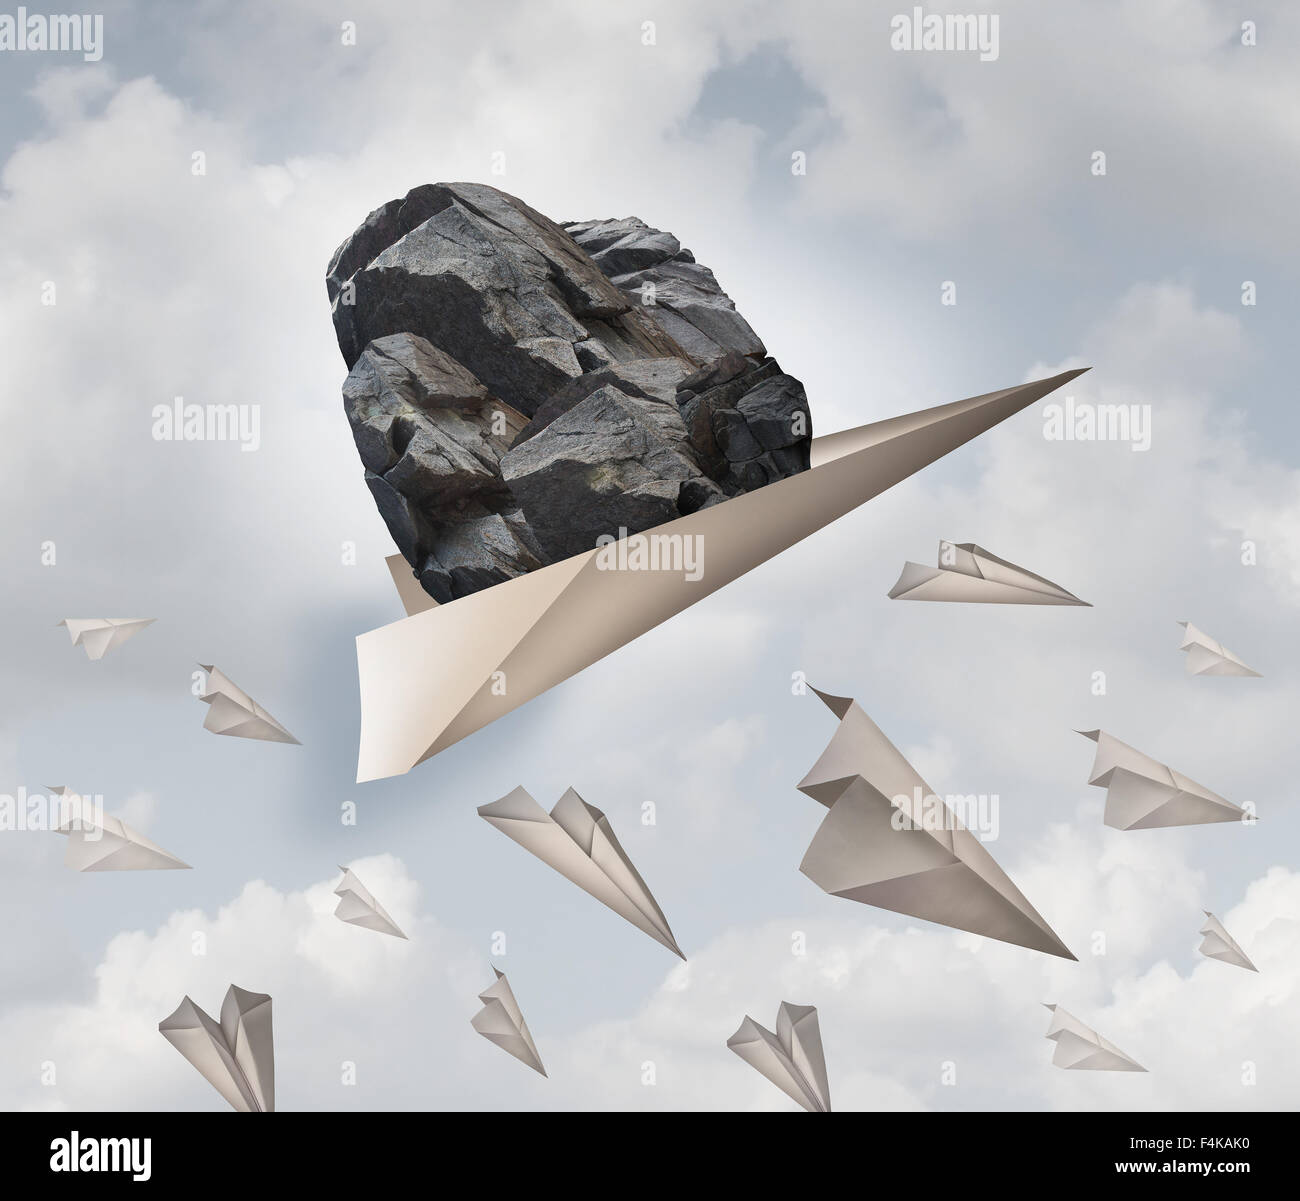 Poder de motivación el éxito empresarial concepto como un avión de papel acarreando un rock pesado con un grupo de aviones de origami falla como Foto de stock